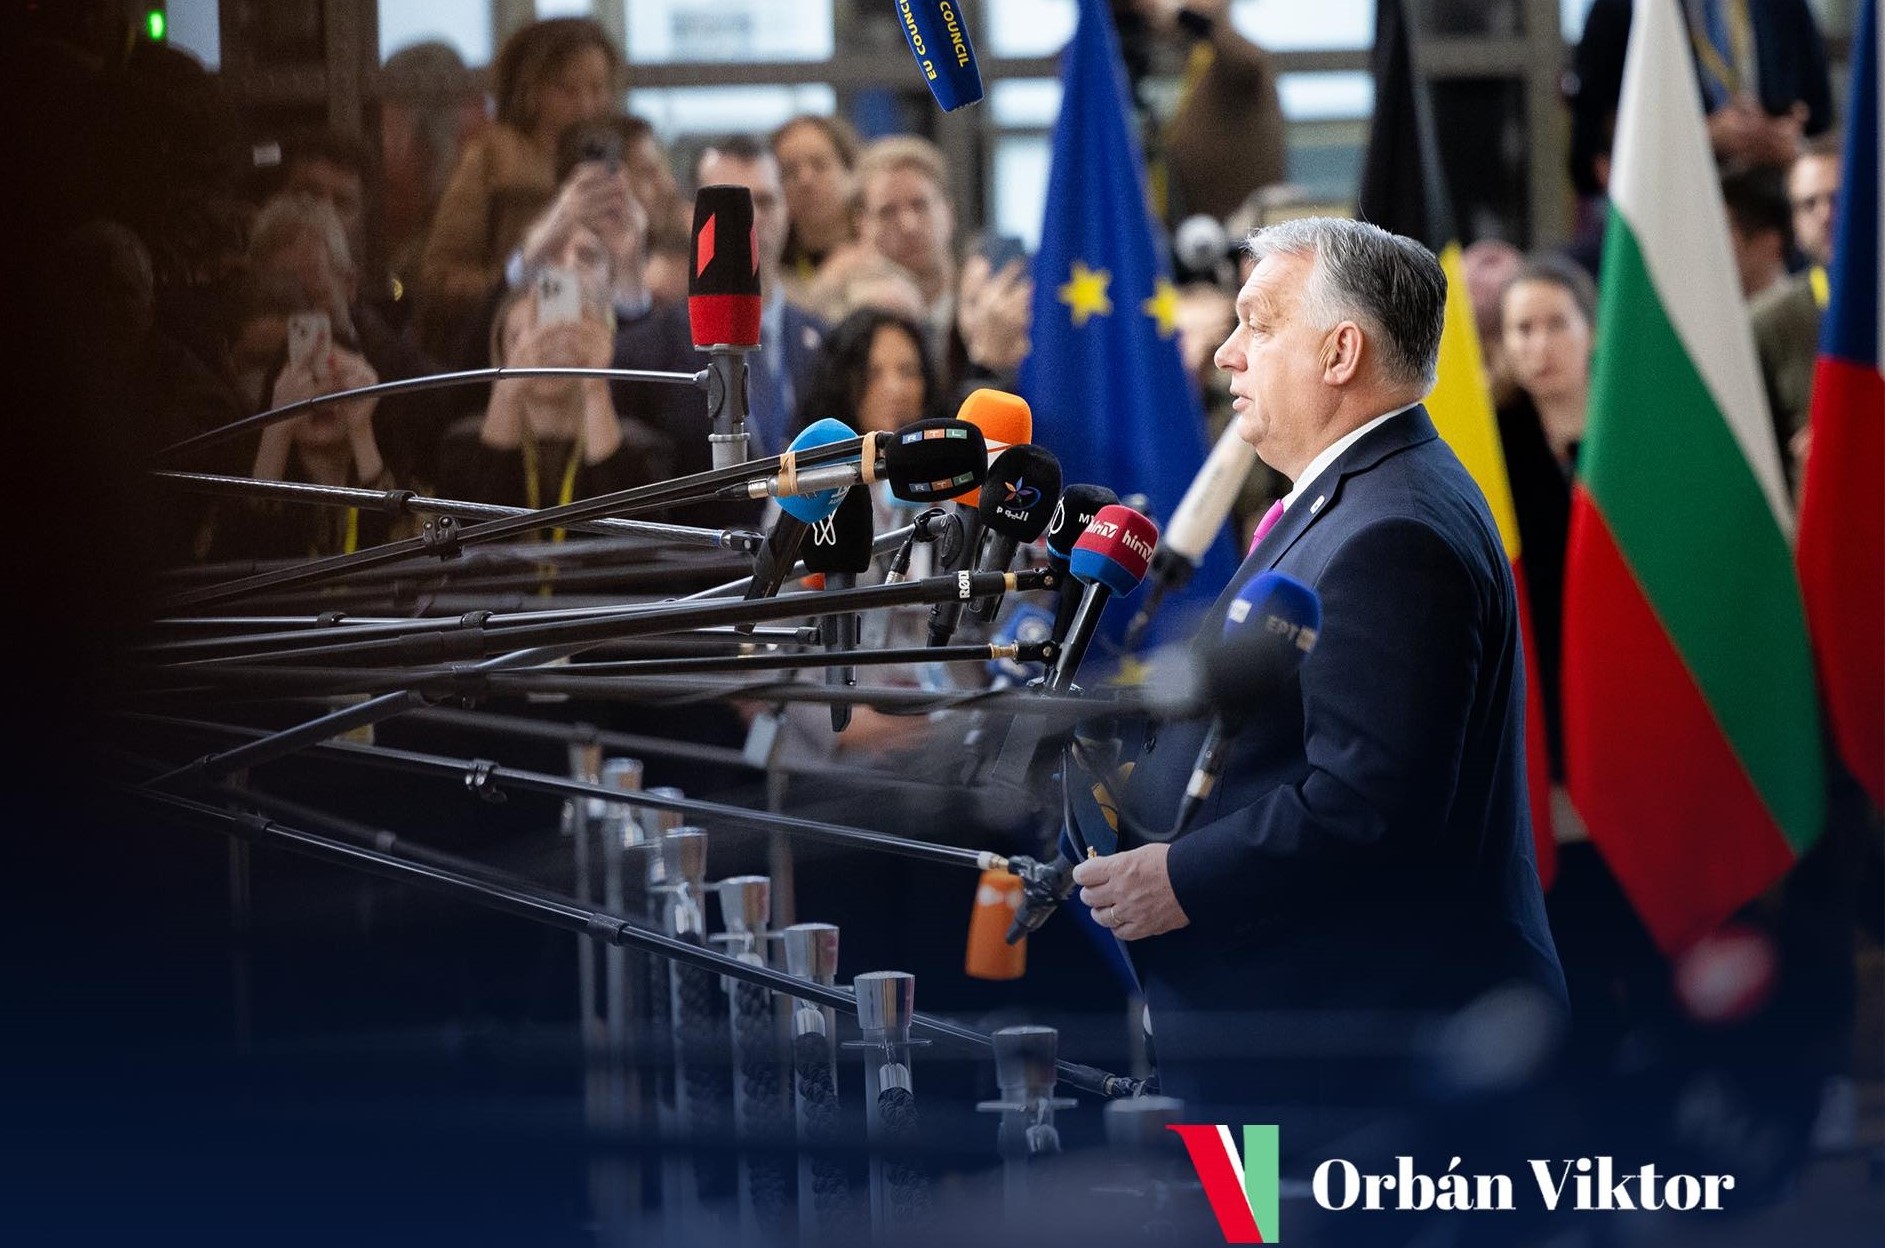 „Budapesti despota” – Együttes fellépést sürget Orbán Viktor ellen egy osztrák lap szerzője